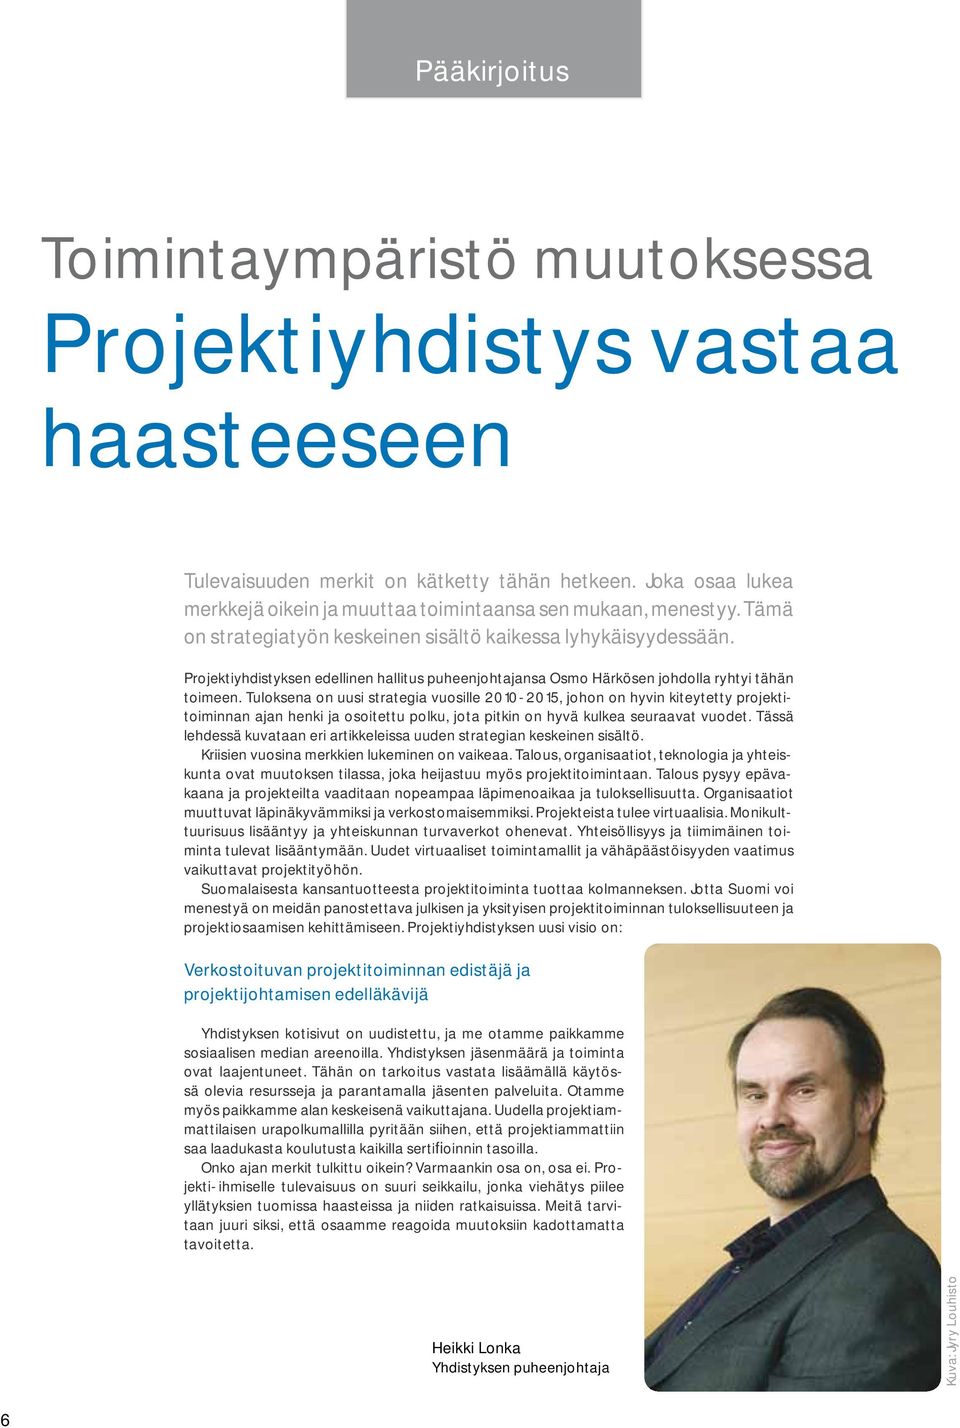 Projektiyhdistyksen edellinen hallitus puheenjohtajansa Osmo Härkösen johdolla ryhtyi tähän toimeen.